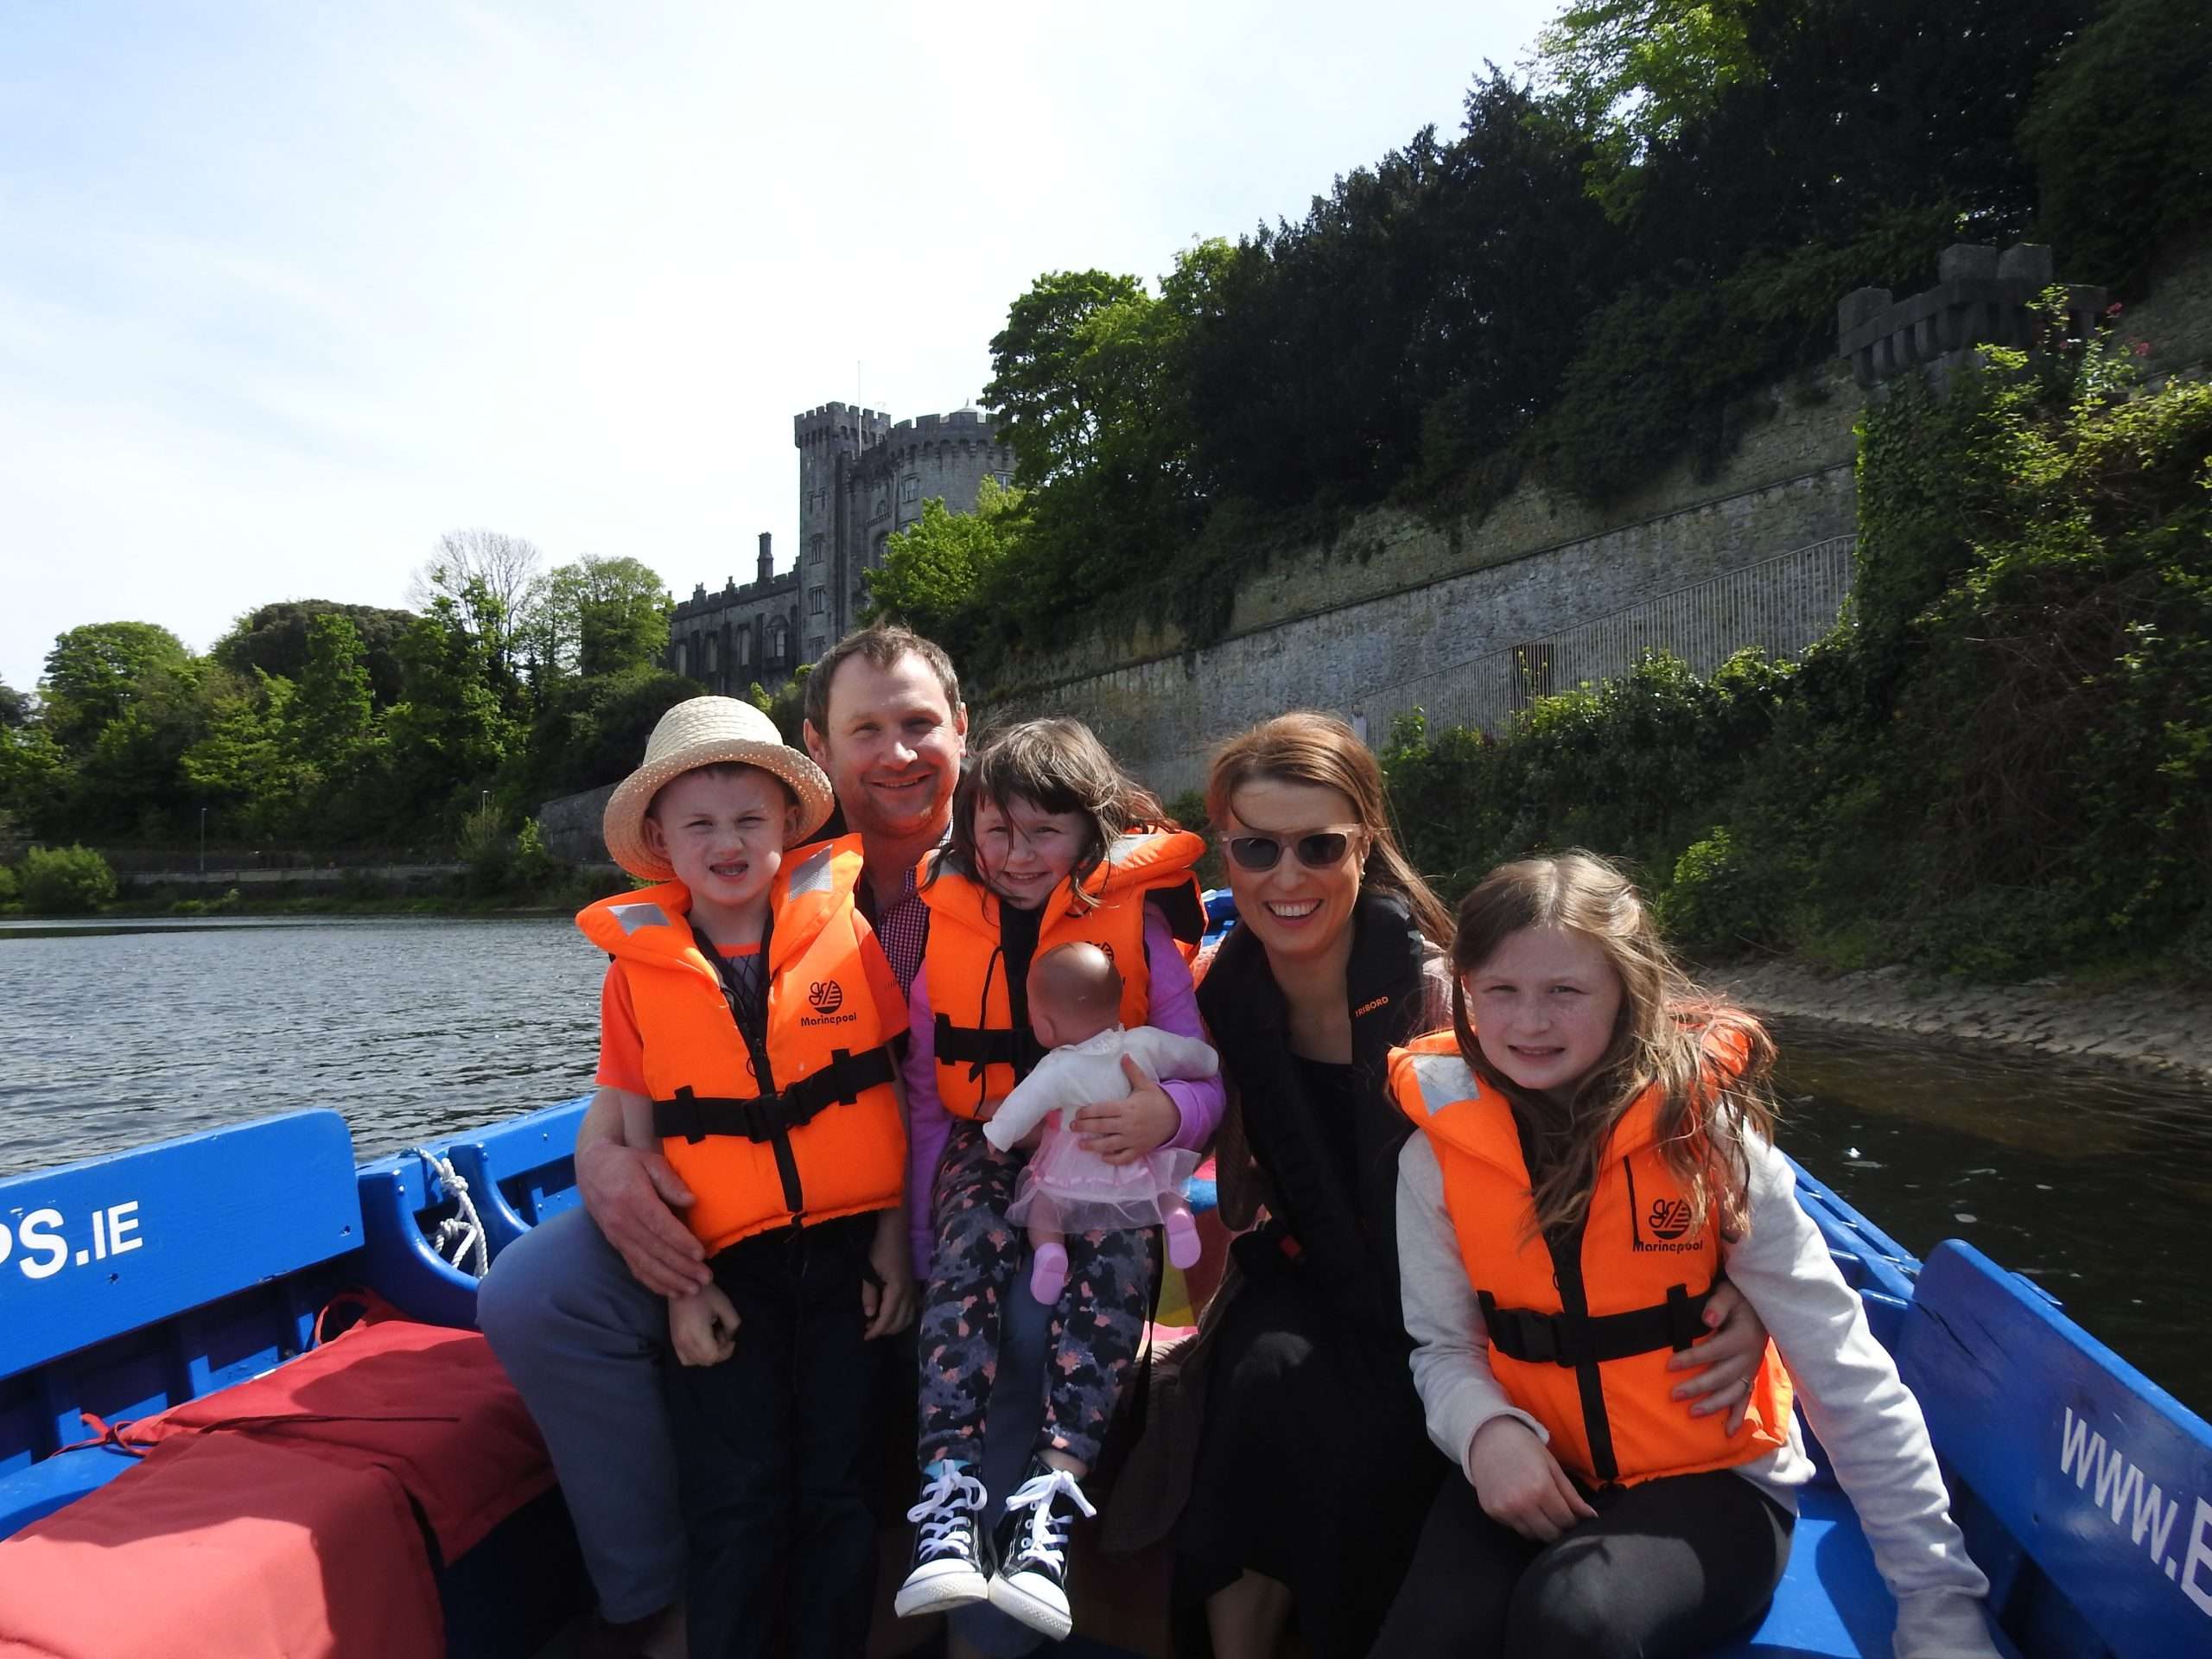 Family on boat trip in Kilkenny